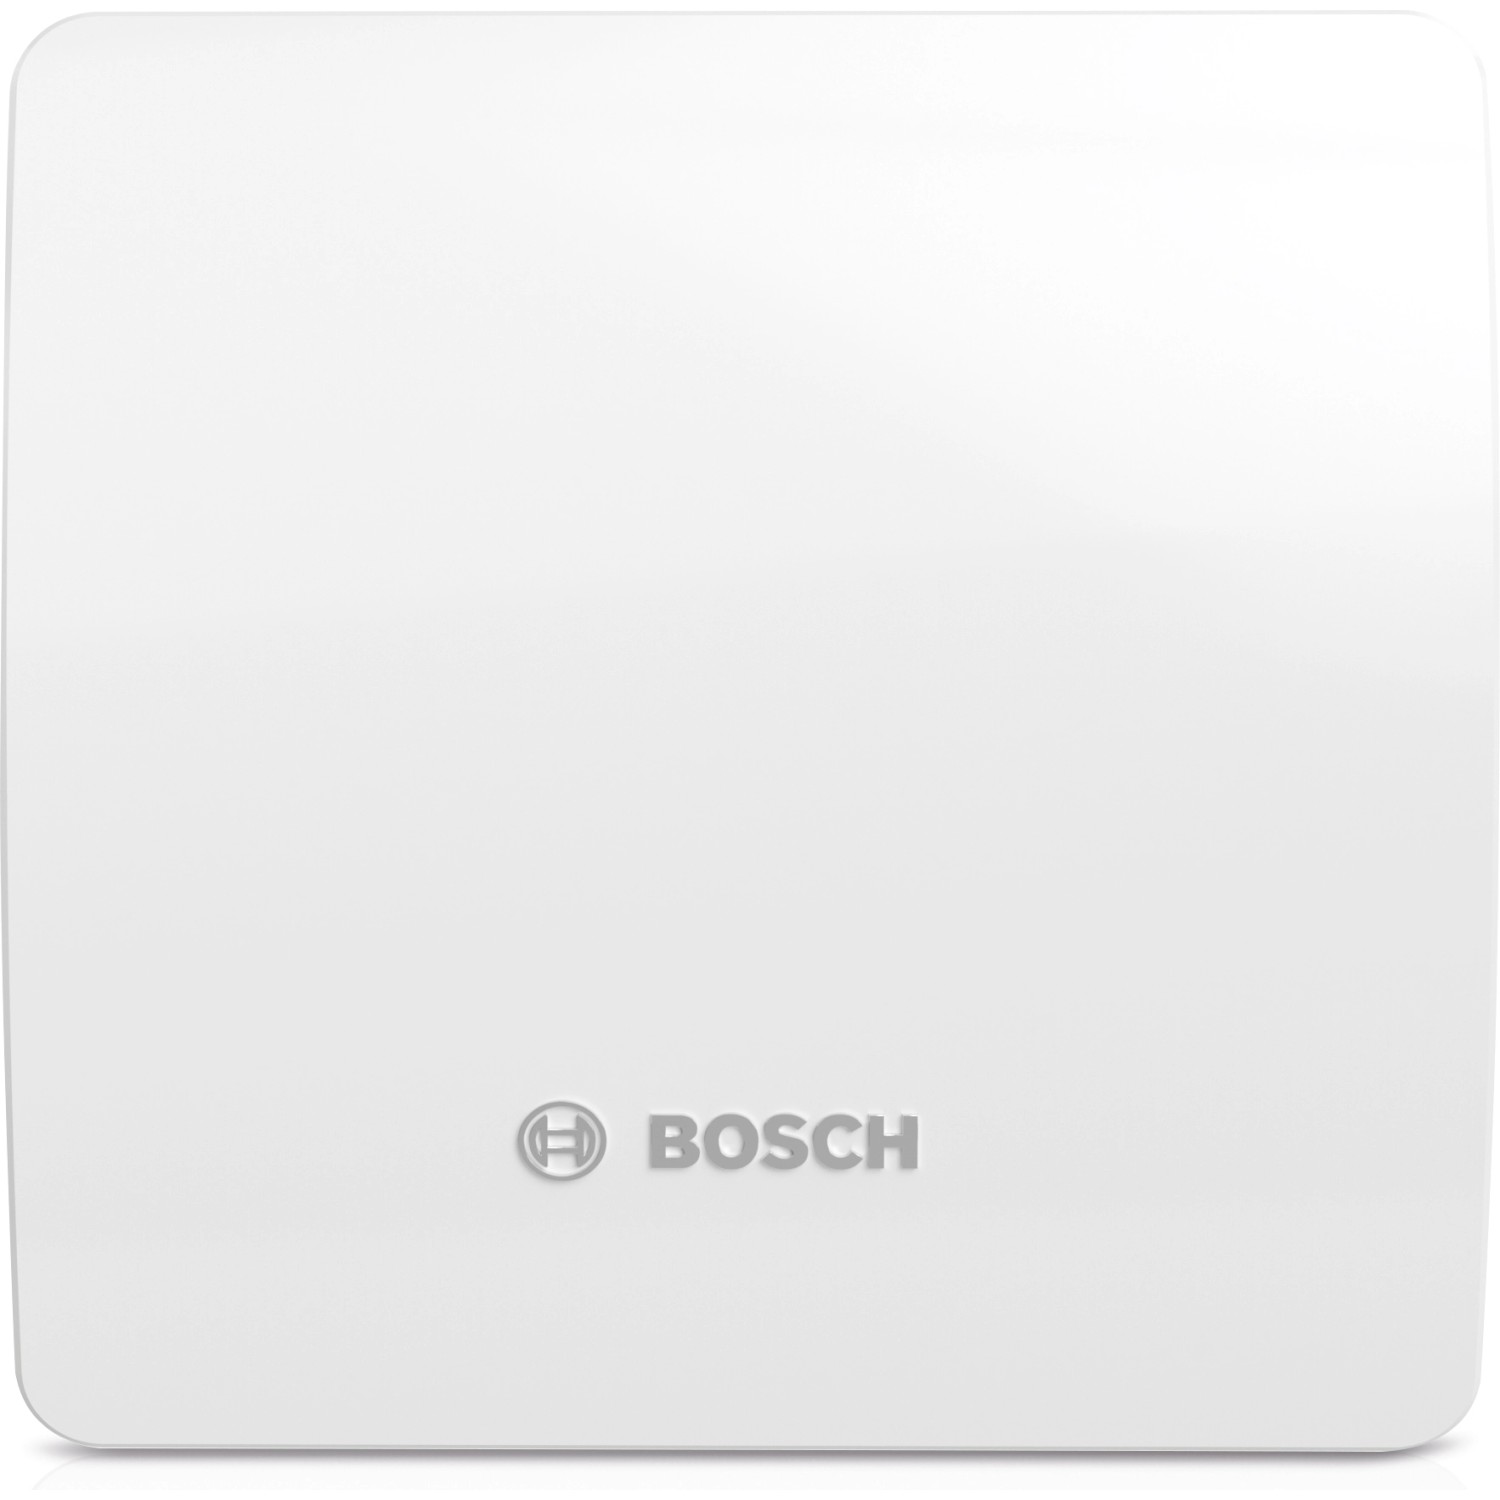 Bosch Badventilator Fan 1500 DH W 125 mit Luftfeuchtesensor Weiß-Glänzend von Bosch